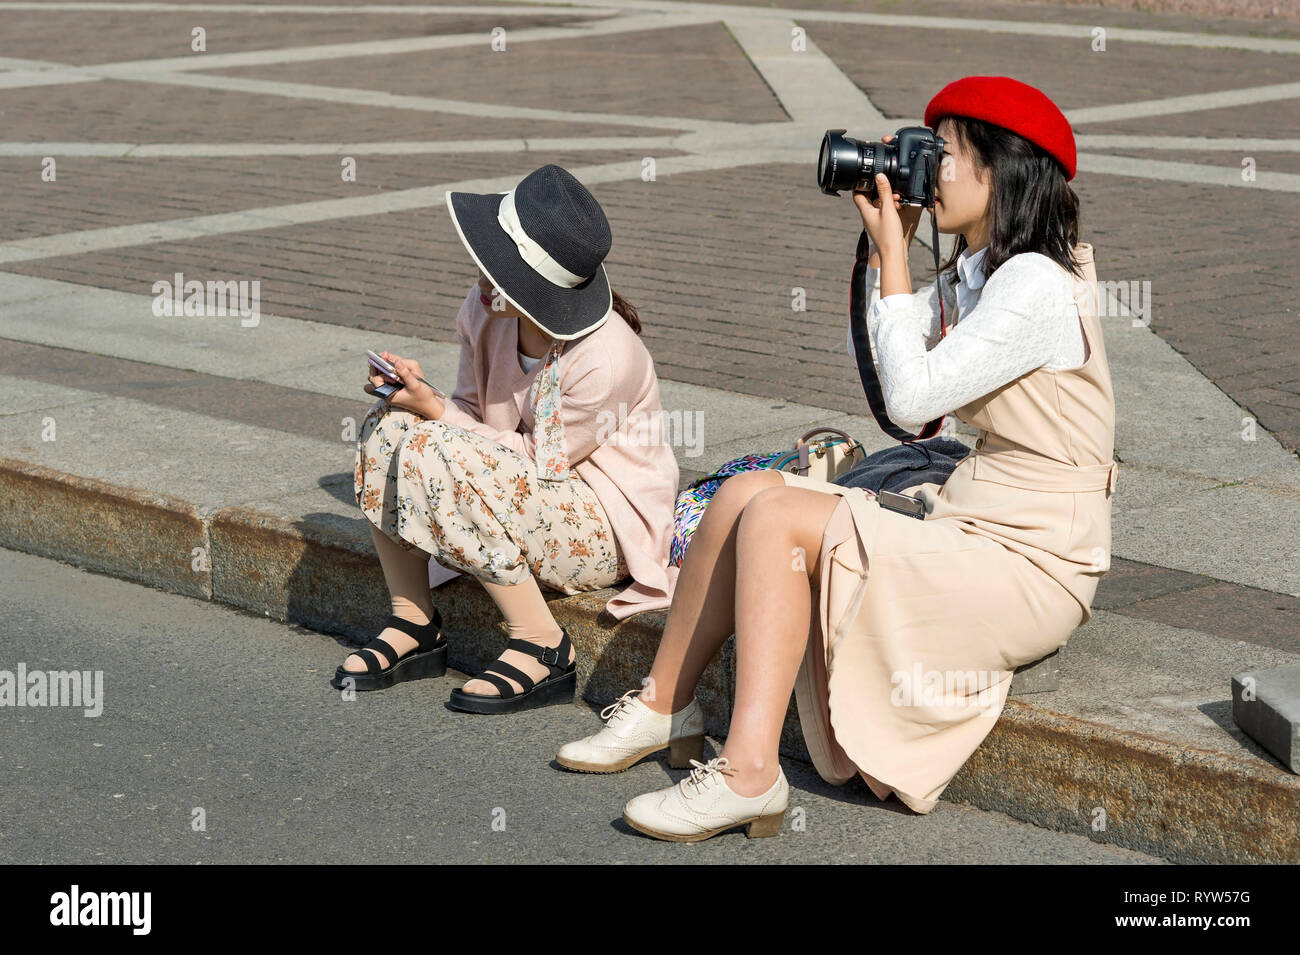 Eine junge Frau und ein Mädchen der Östlichen Aussehen in hellen Pastelltönen Kleidung und Hüte, sitzt auf dem Bürgersteig, Bilder der Sehenswürdigkeiten der Palace s nehmen Stockfoto